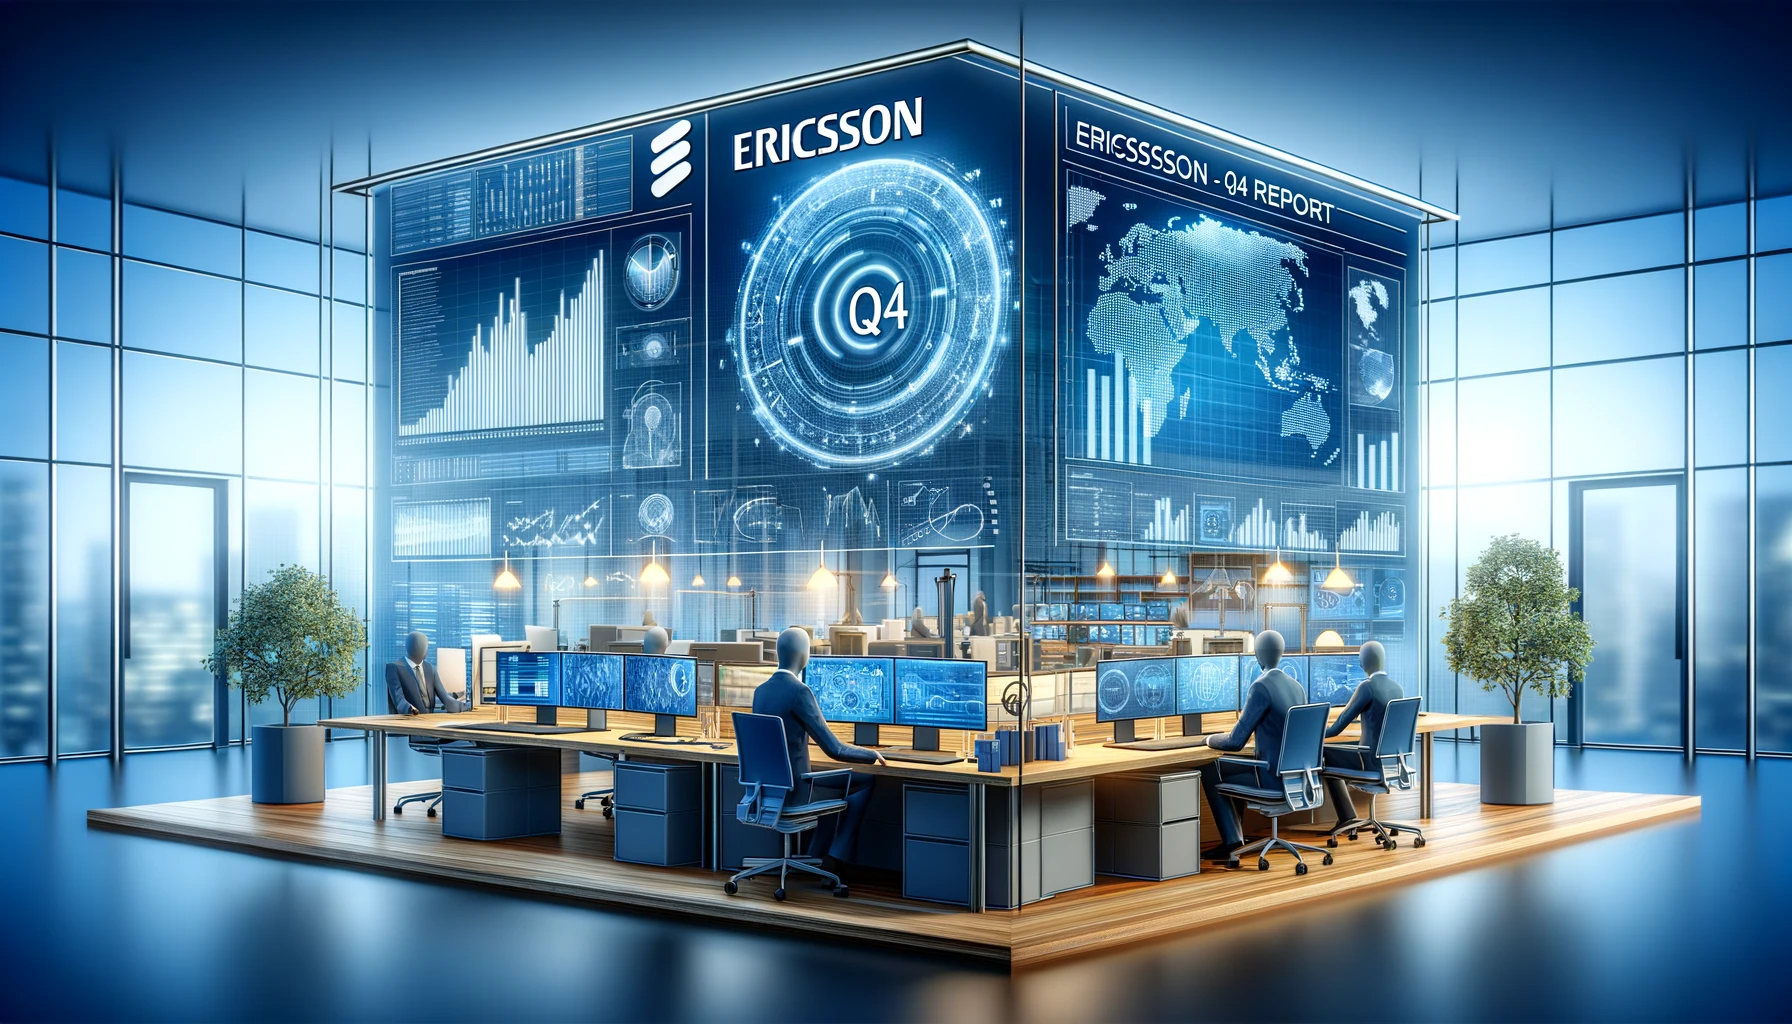 Ericsson Q4 rapport